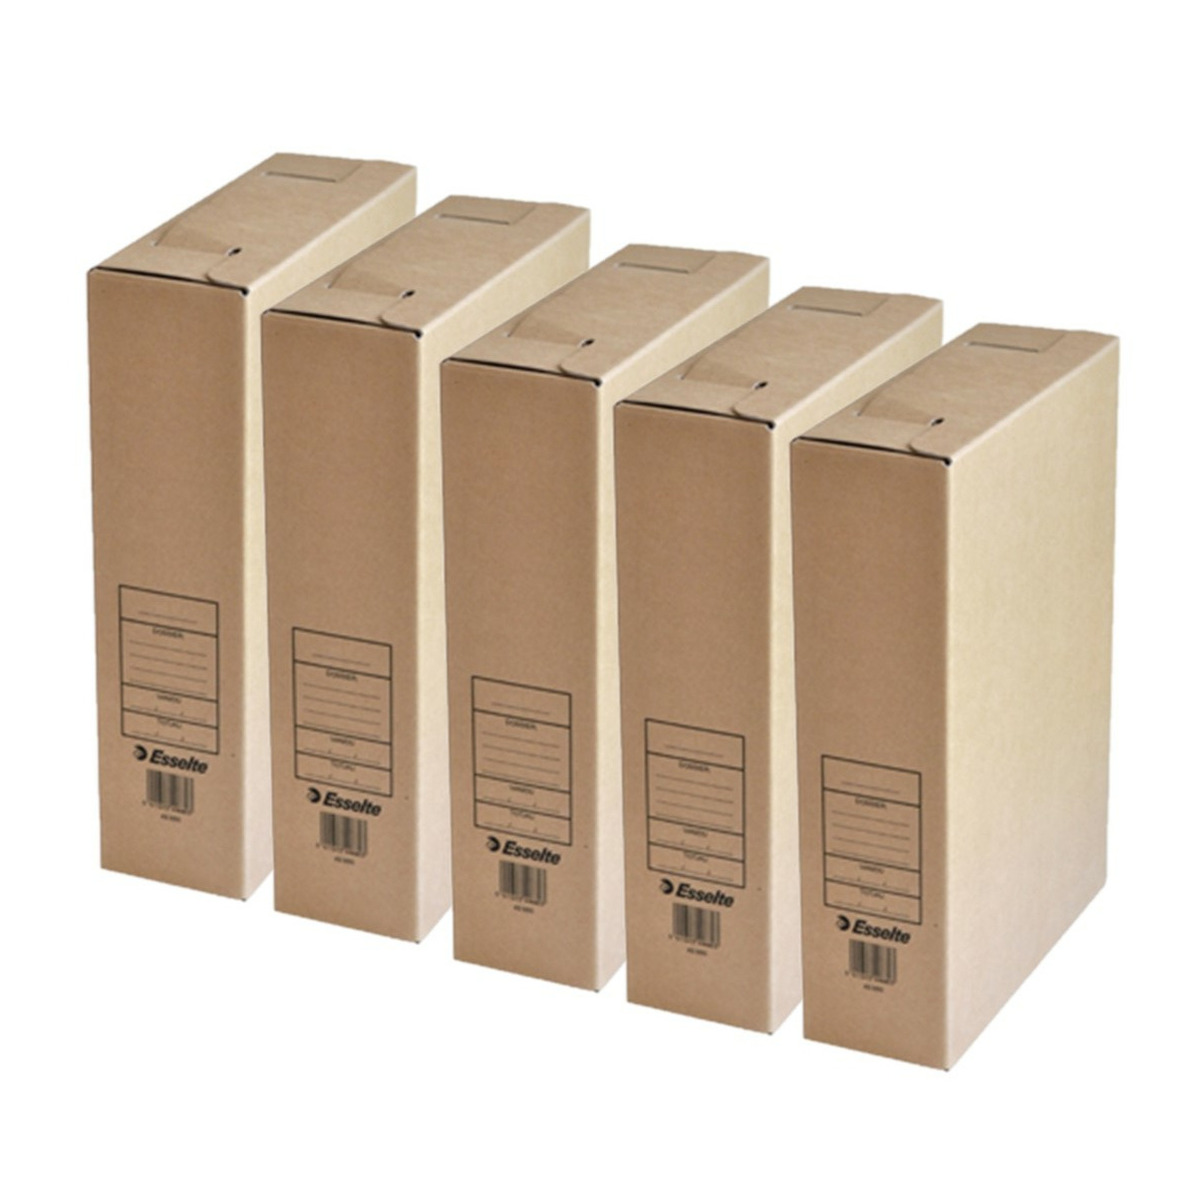 Kantoor archiefdoos 15x karton bruin 23 x 32 cm A4 formaat kantoor artikelen